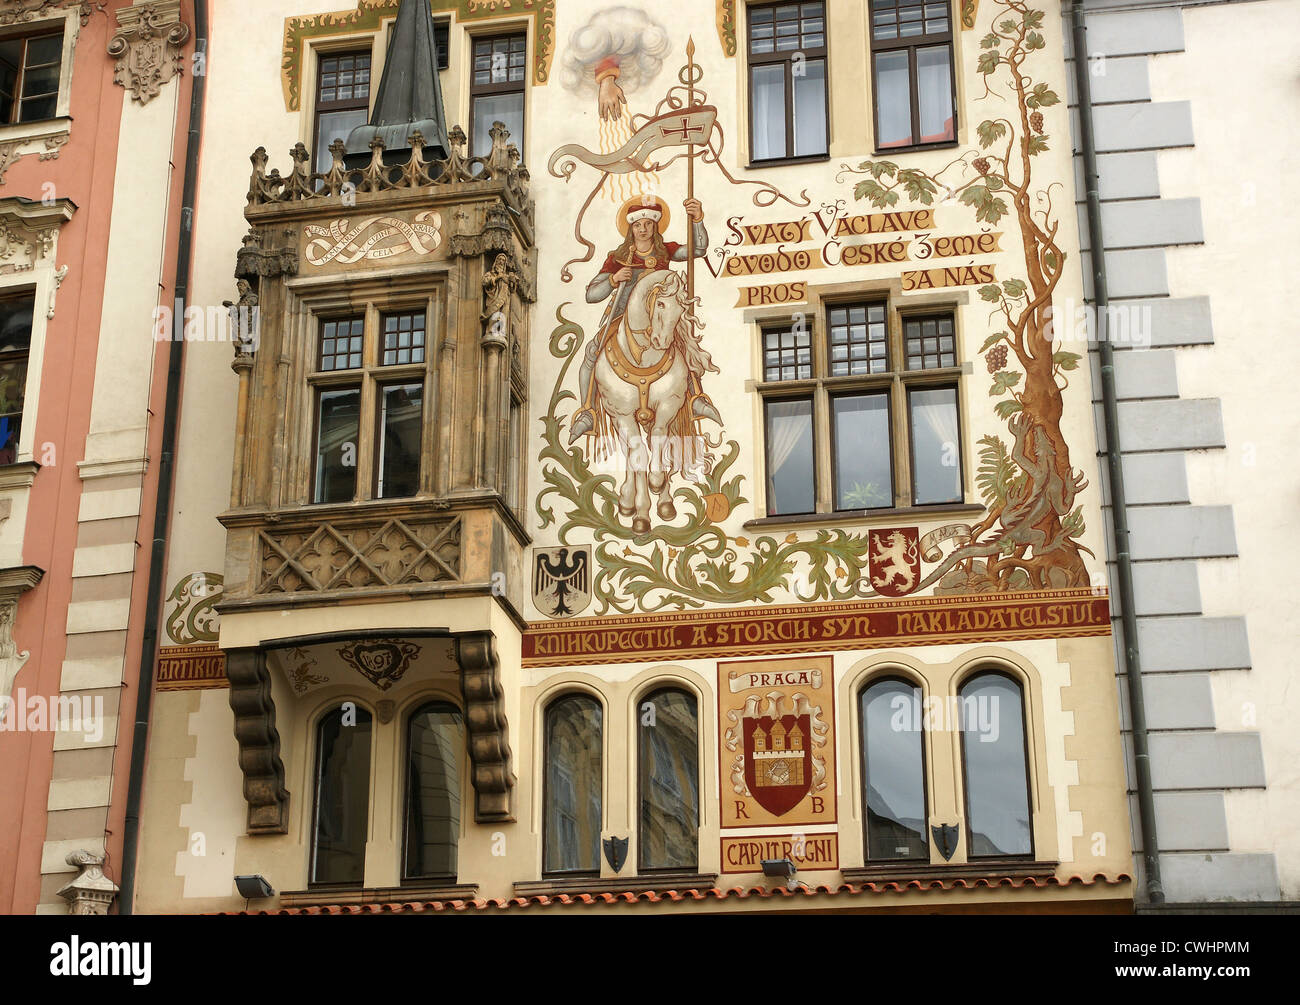 République tchèque. Prague. La Storch House (no16). Façade avec la peinture figurative de saint Venceslas à cheval. Par Mikolas Ales Banque D'Images